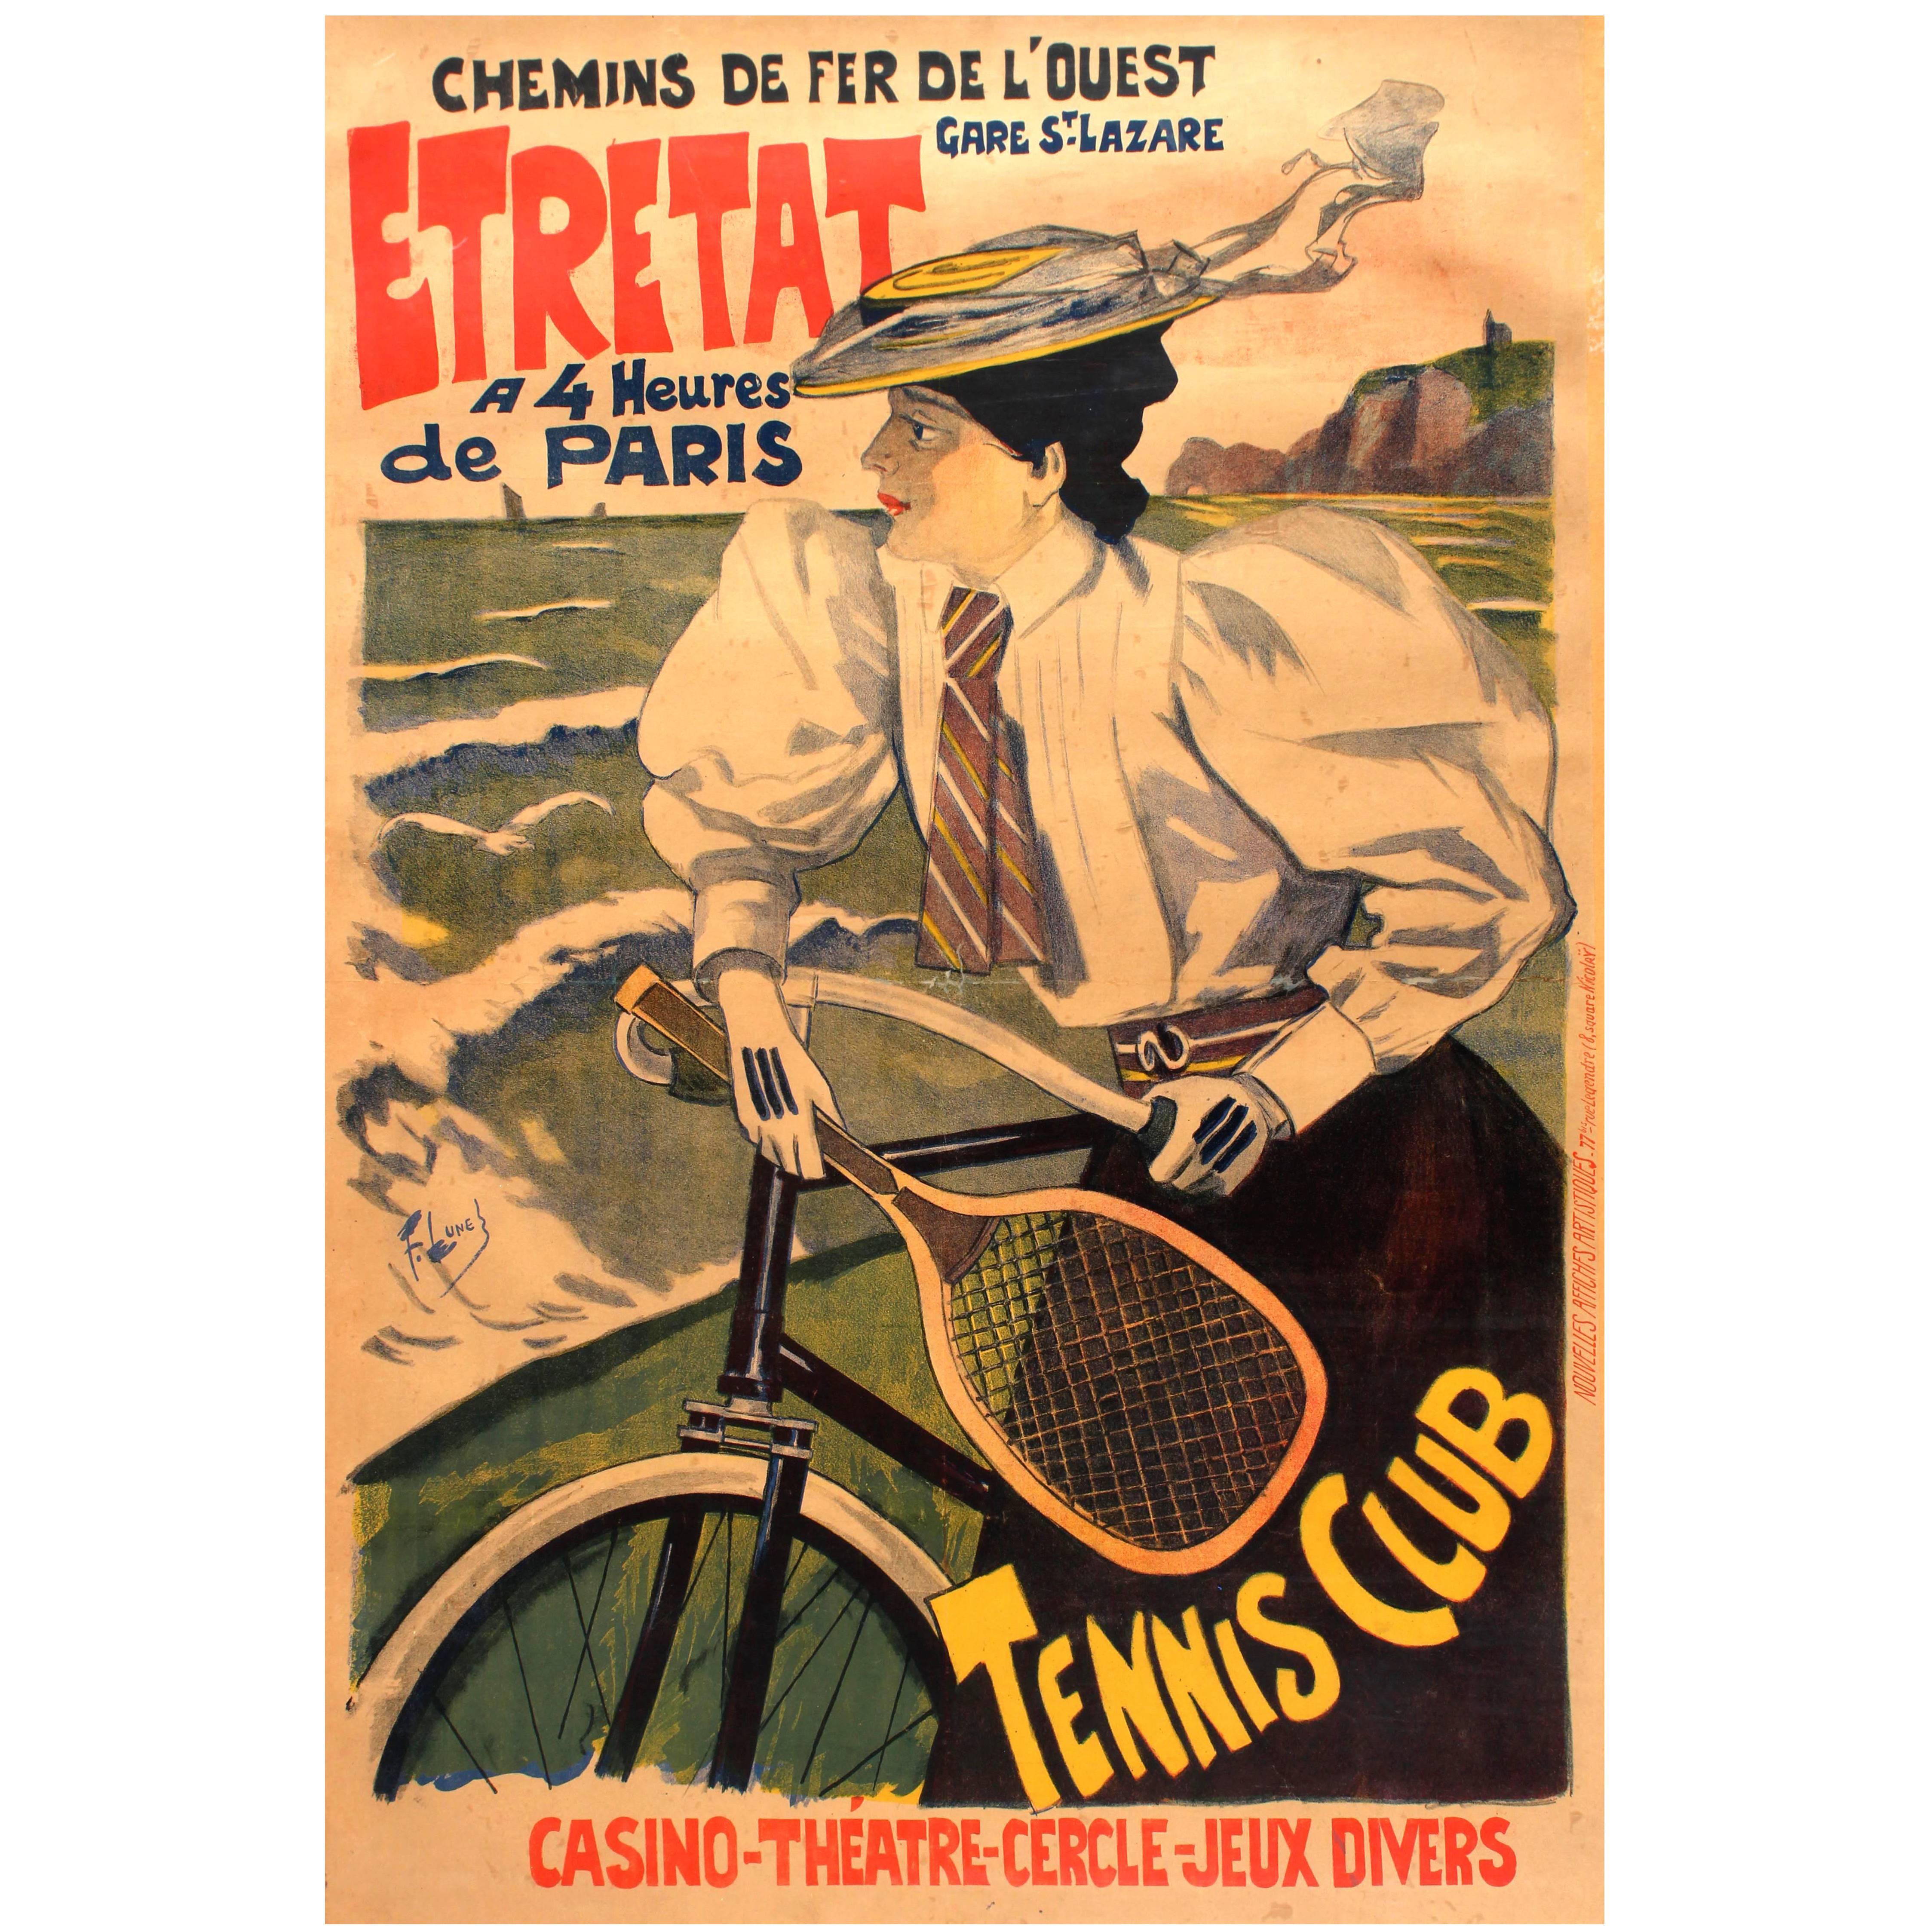 Affiche originale et ancienne des Chemins De Fer De L'Ouest Paris Etretat, Chemins de fer, Voiture, Tennis